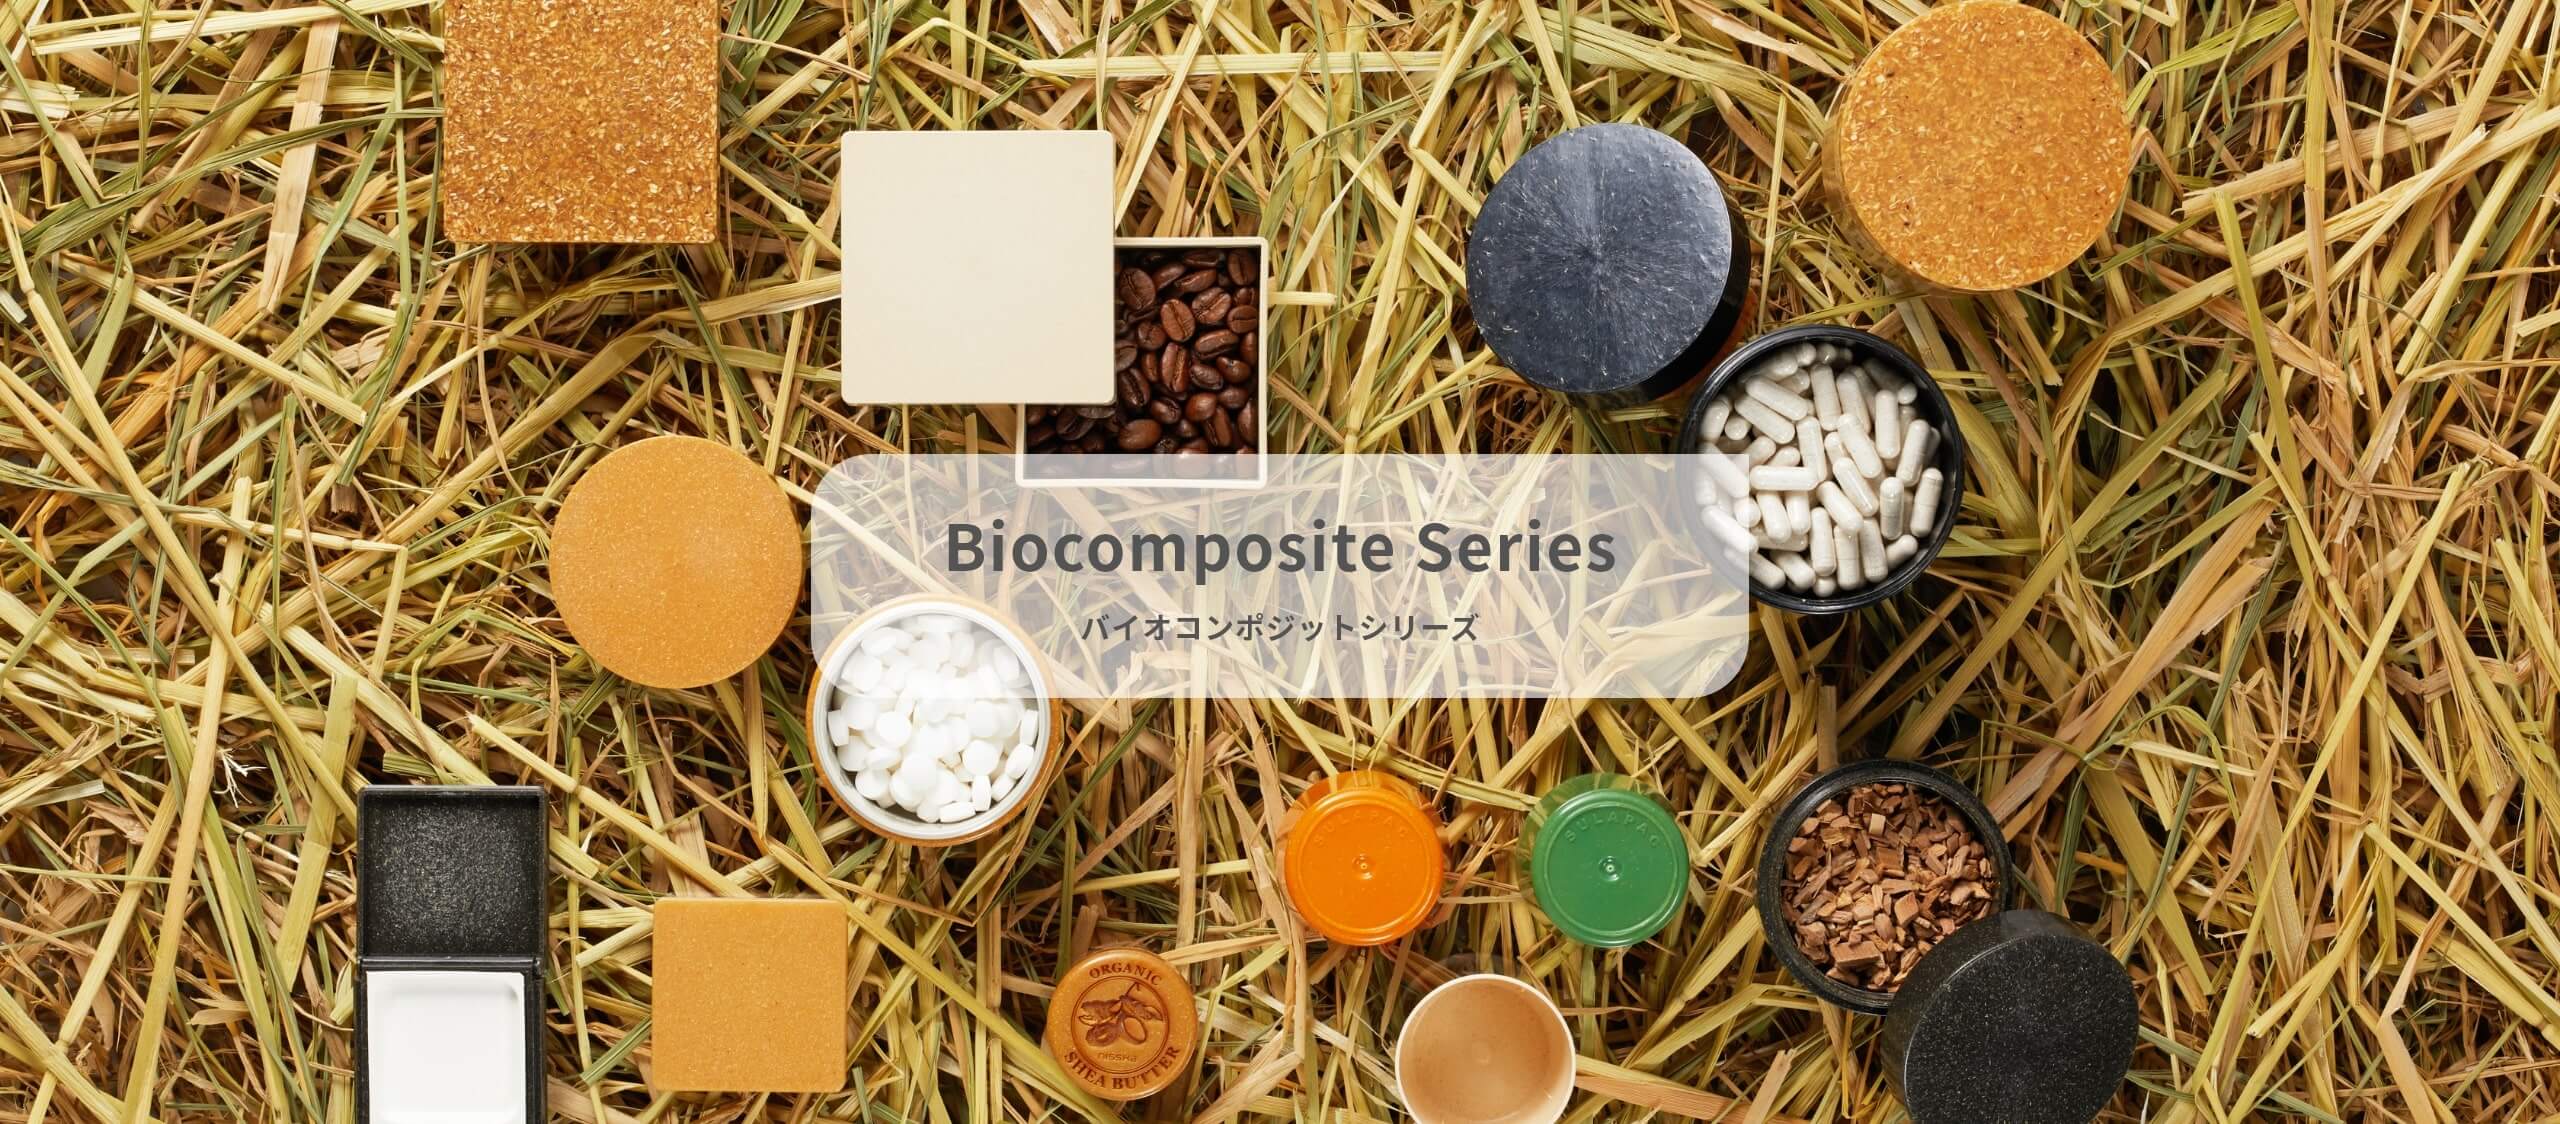 Biocomposite Series